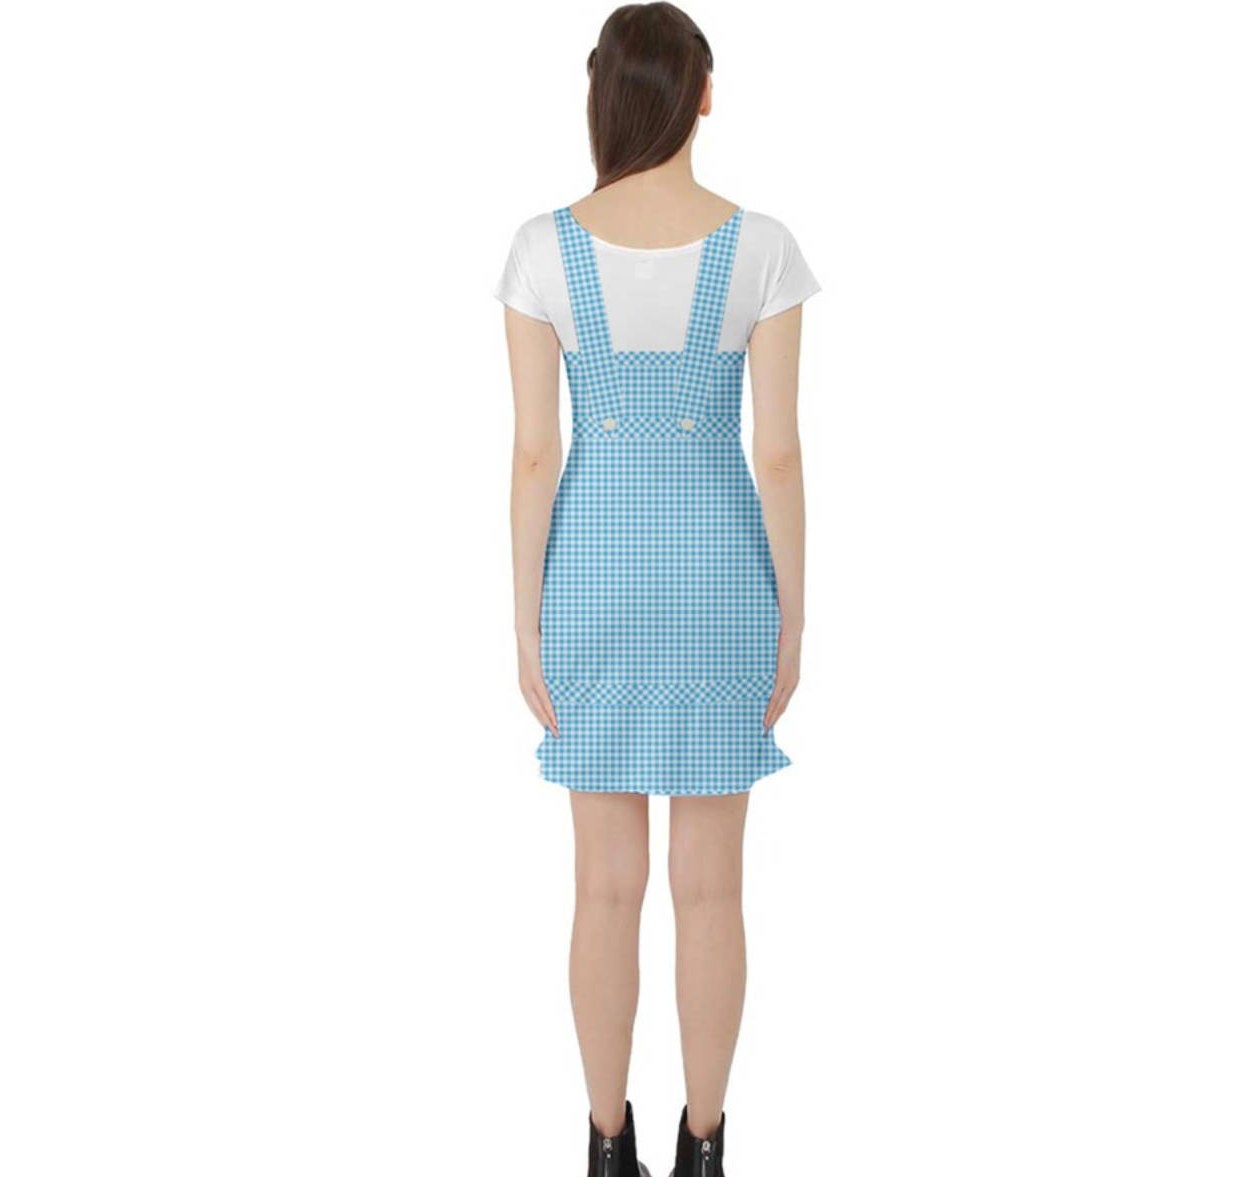 Dorothy Wizard of Oz Inspired Short Sleeve Skater Dress